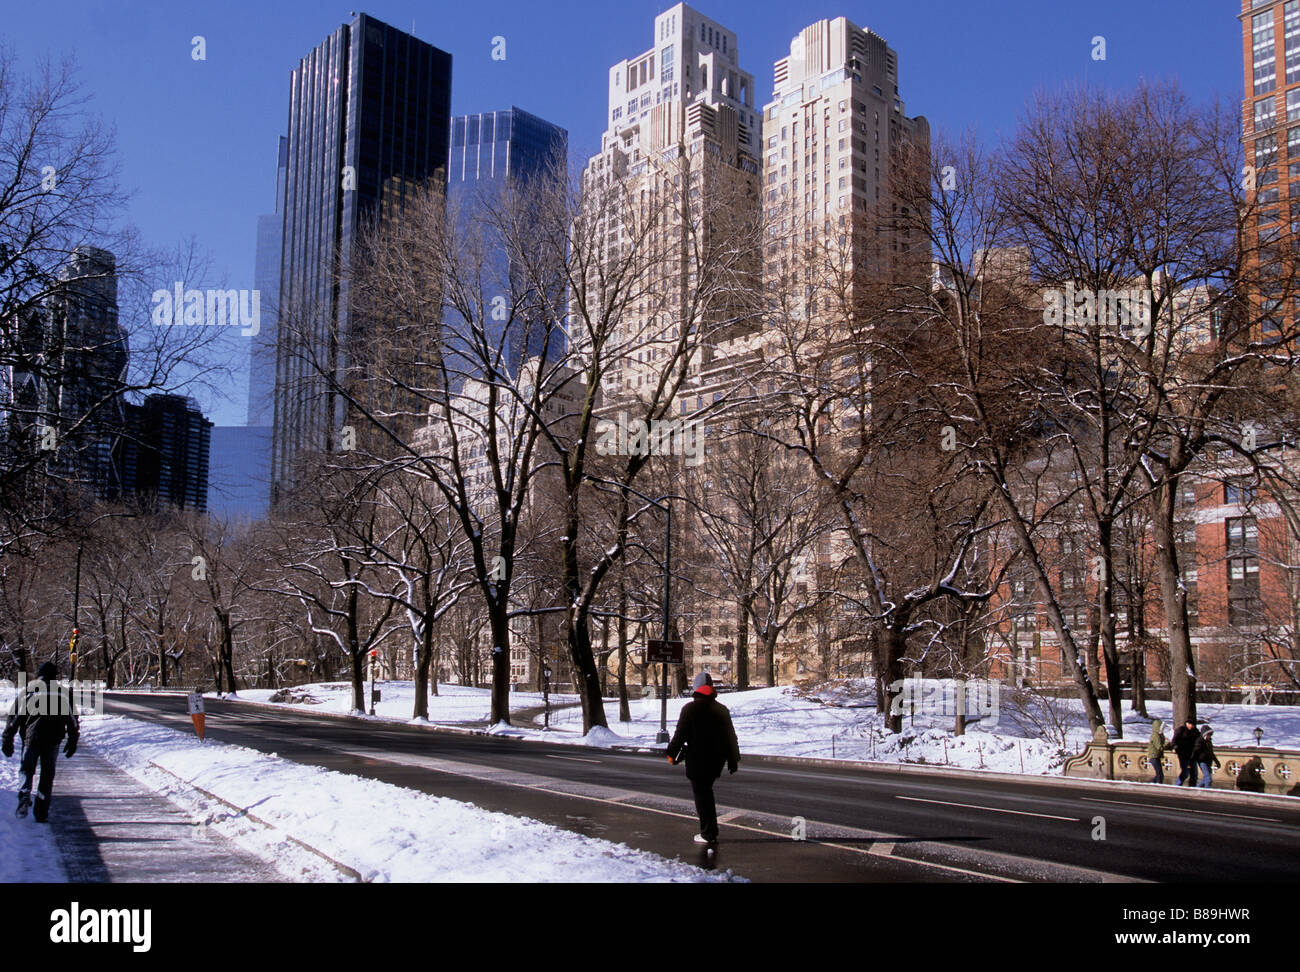 Scène de neige d'hiver à Central Park New York. Bâtiments Central Park West. The Century, Trump International Hotel and Tower et 15 Central Park West. ÉTATS-UNIS Banque D'Images